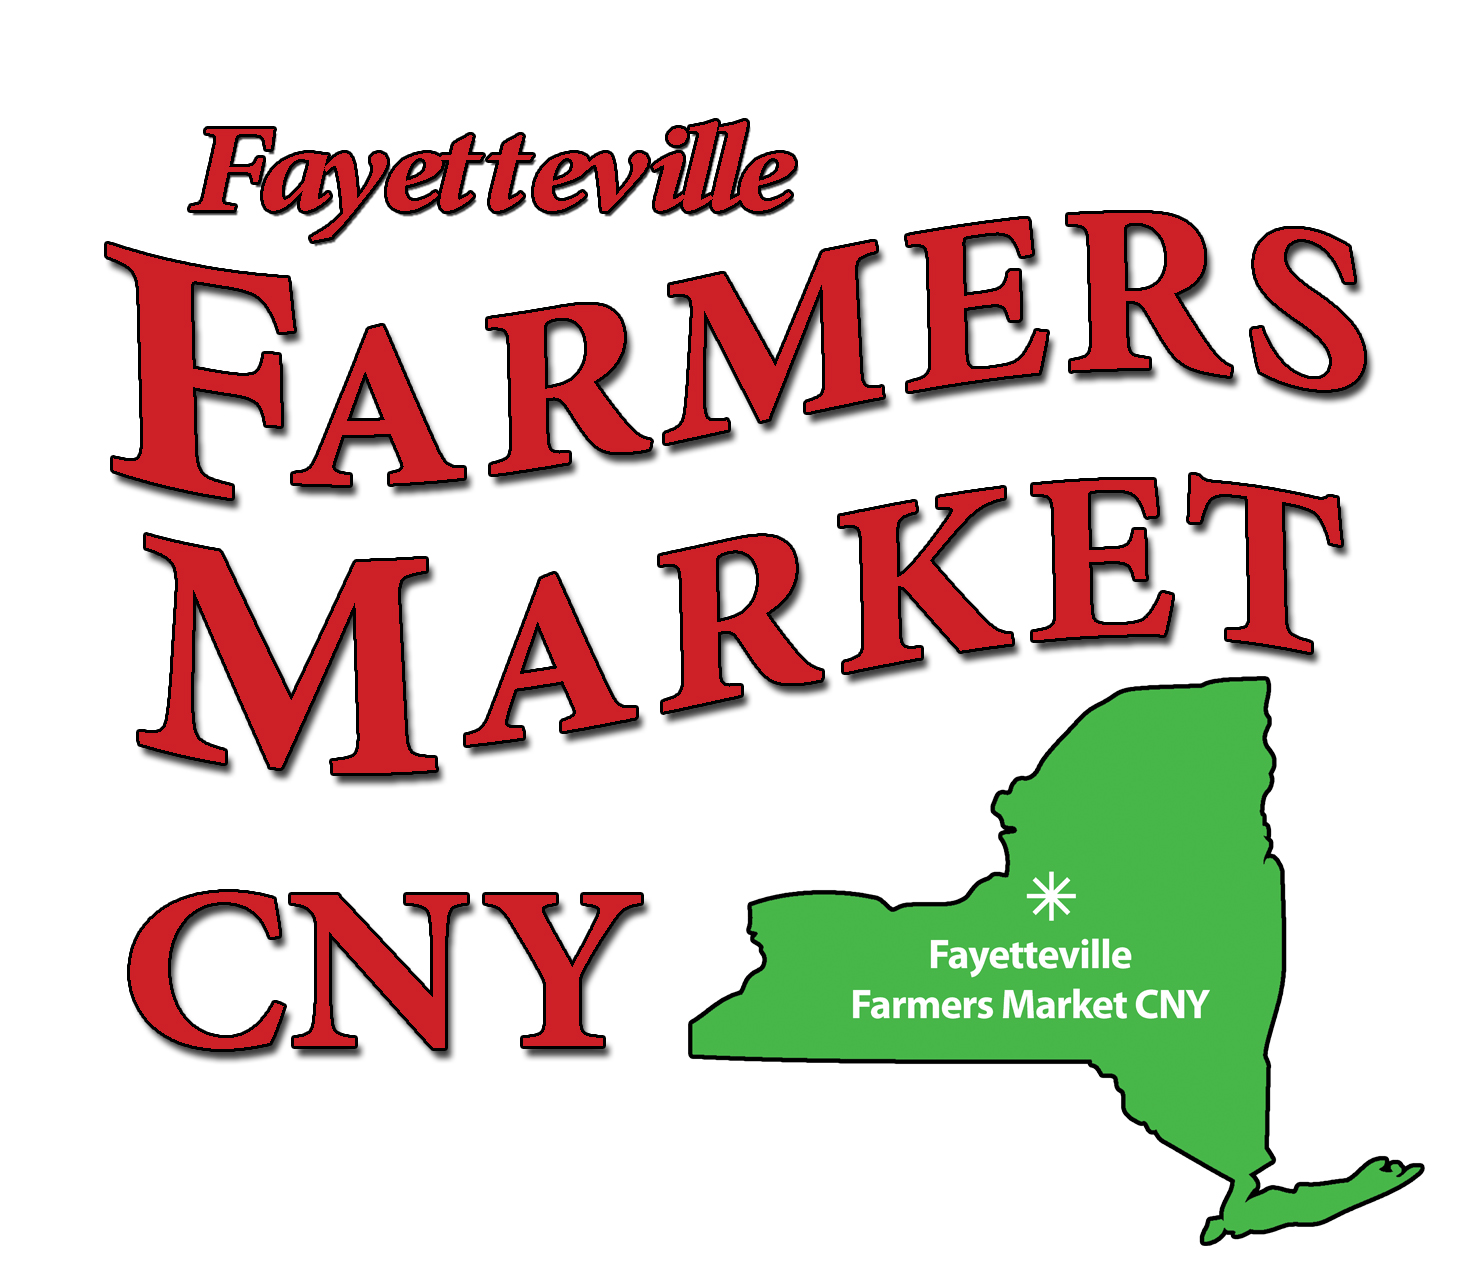 Fayetteville Farmers Market CNY